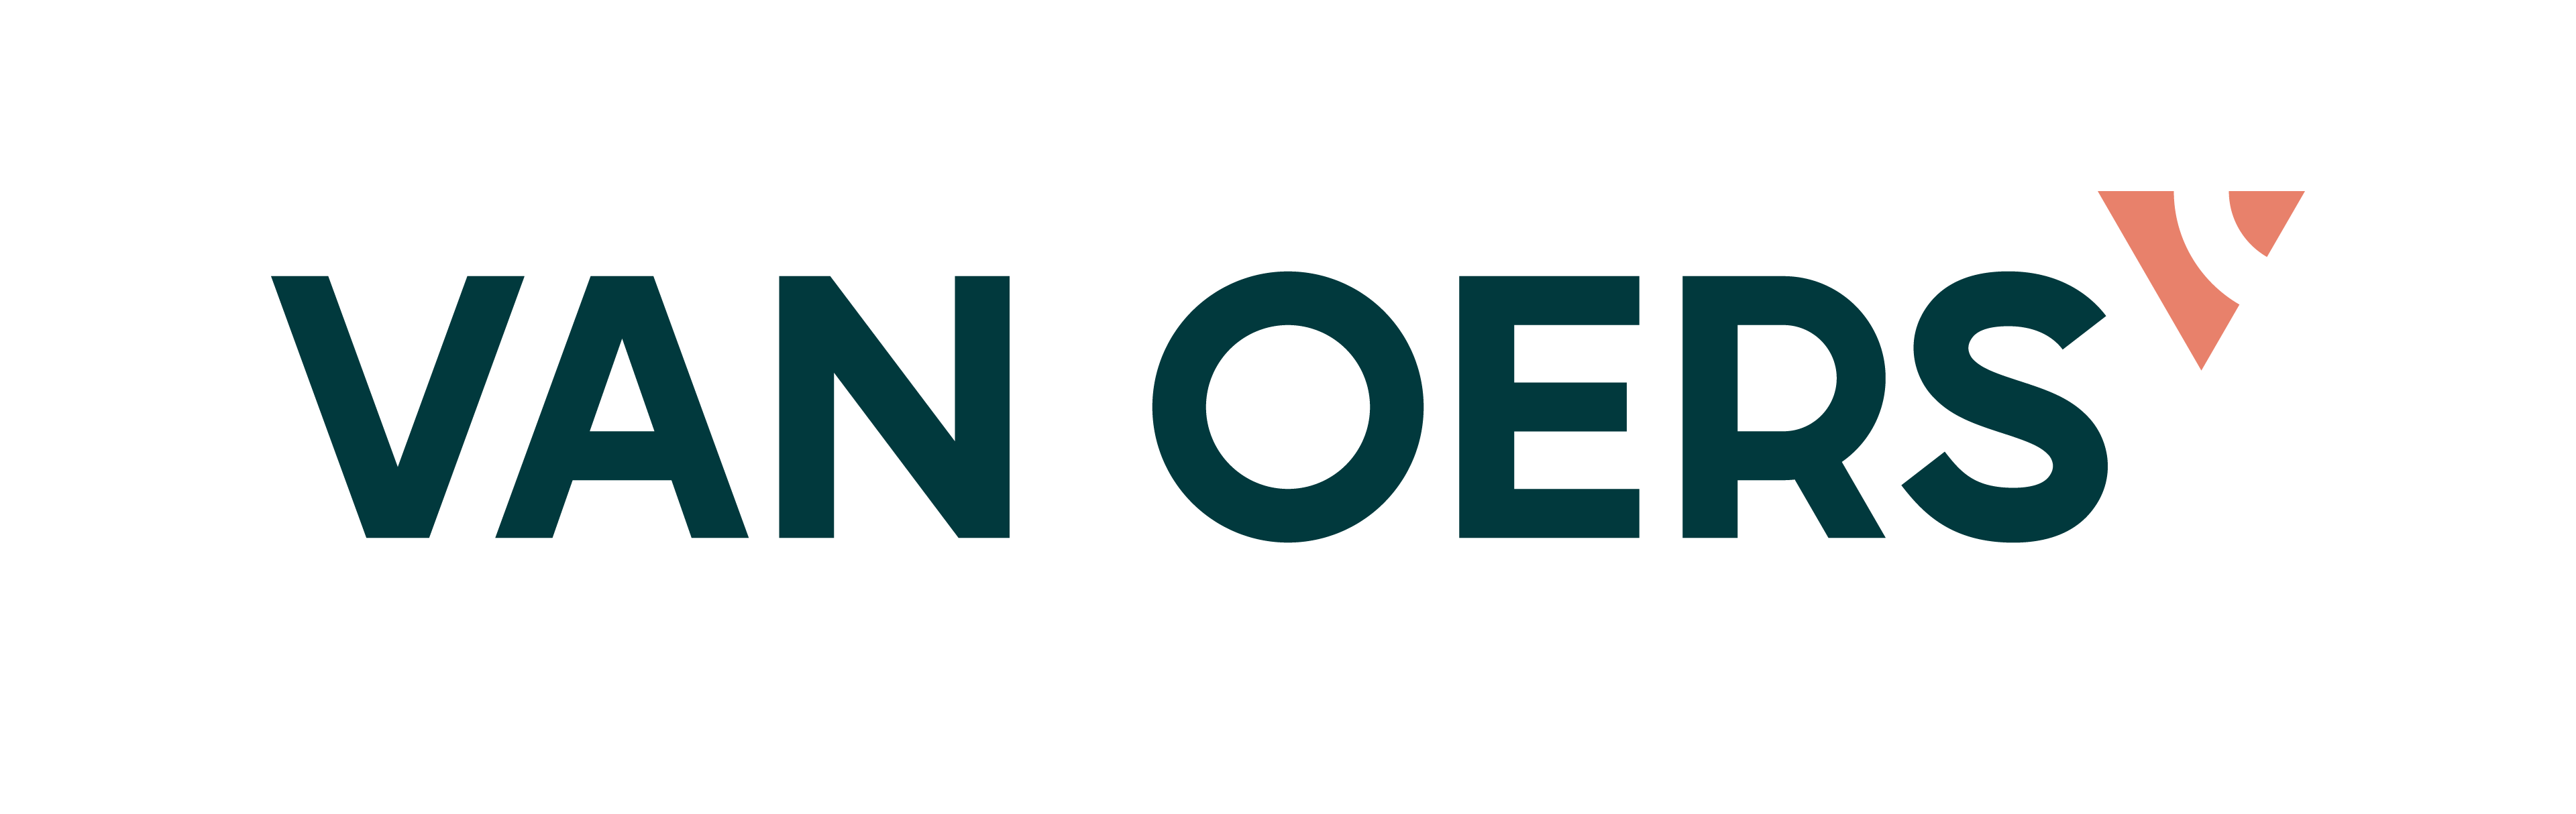 Van Oers logo